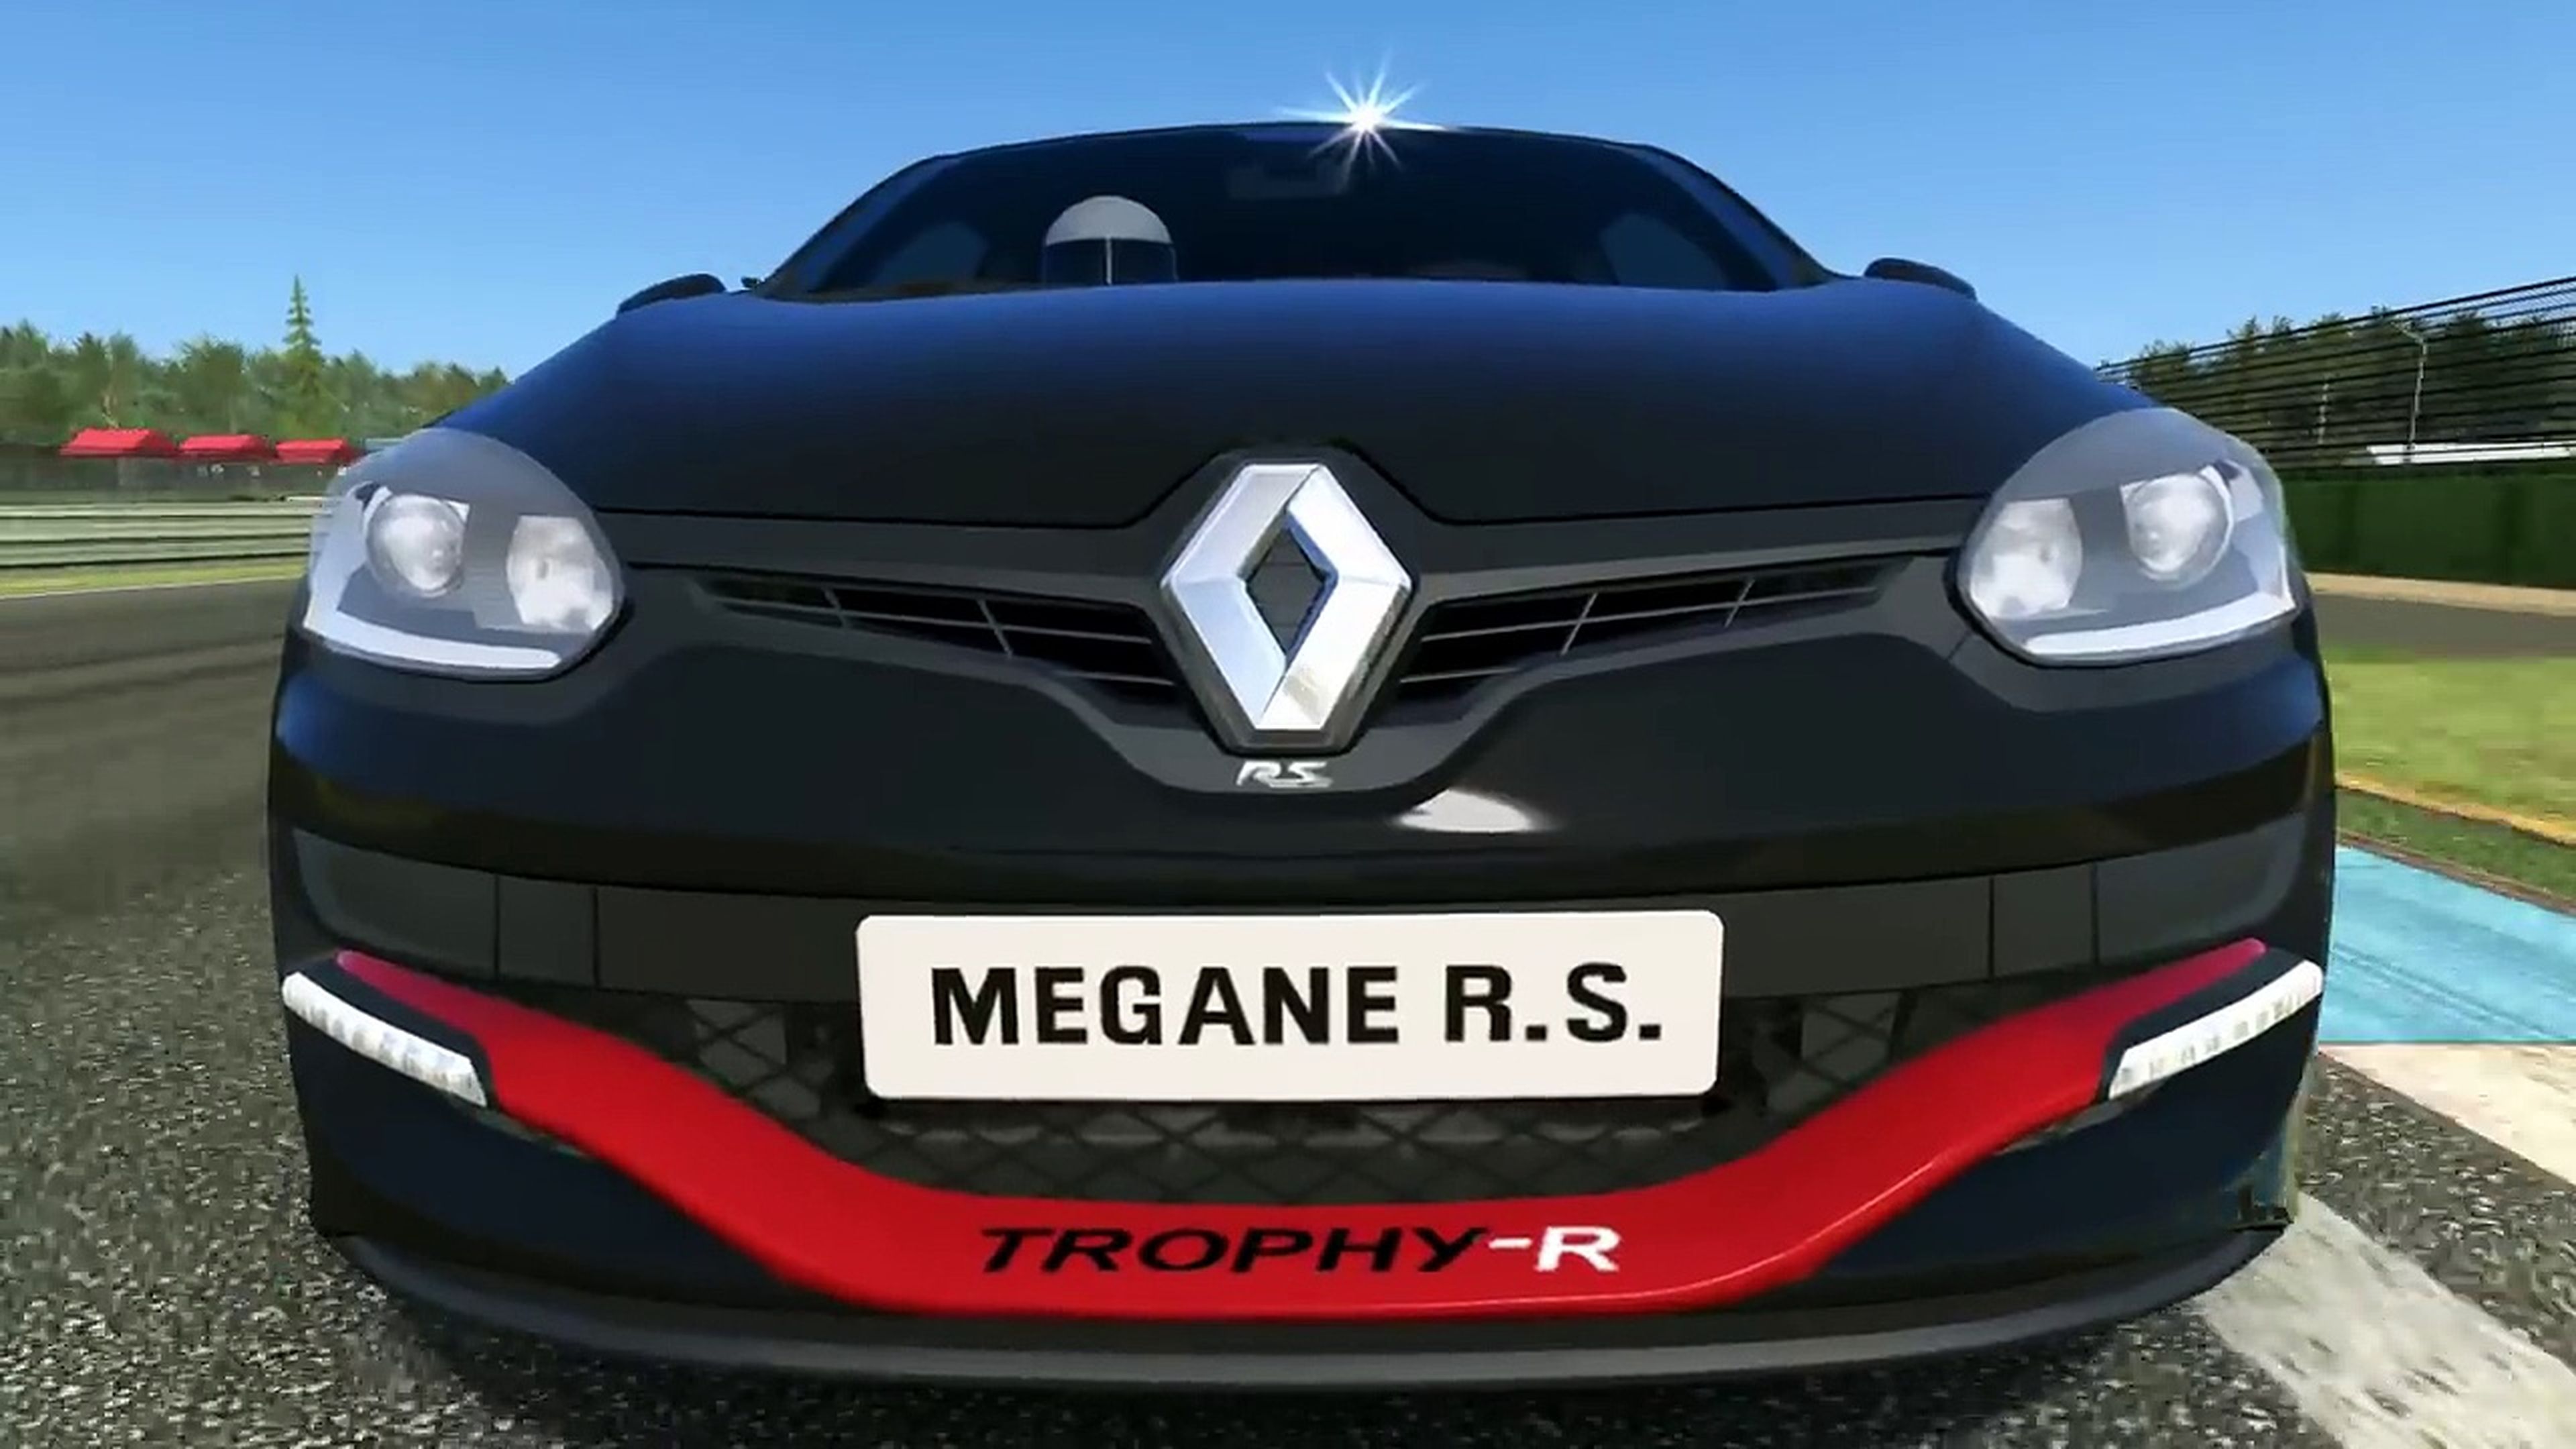 Renault Megane RS 275 Trophy-R en Real Racing 3